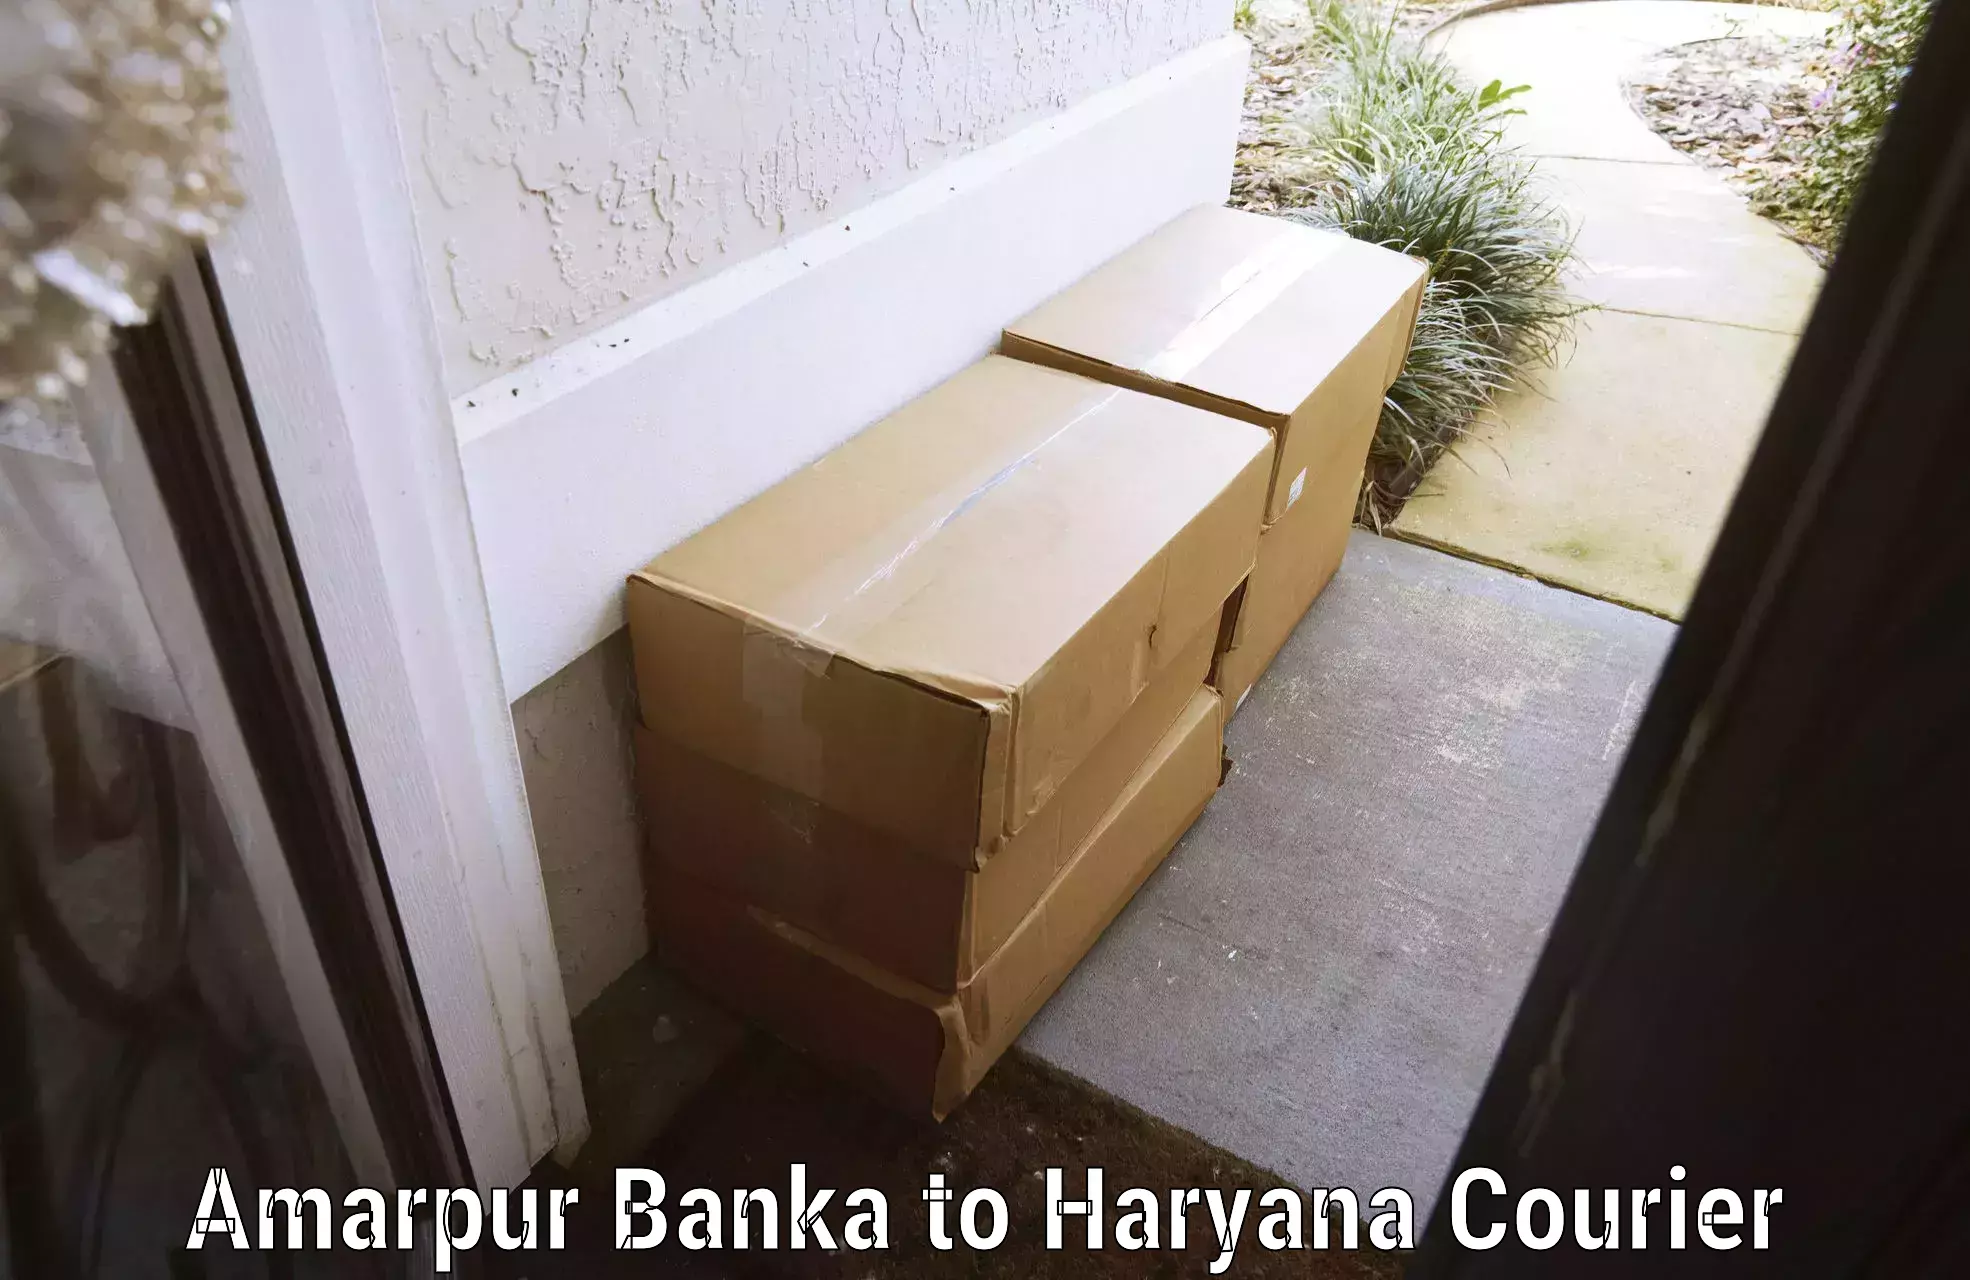 Baggage delivery technology Amarpur Banka to NCR Haryana